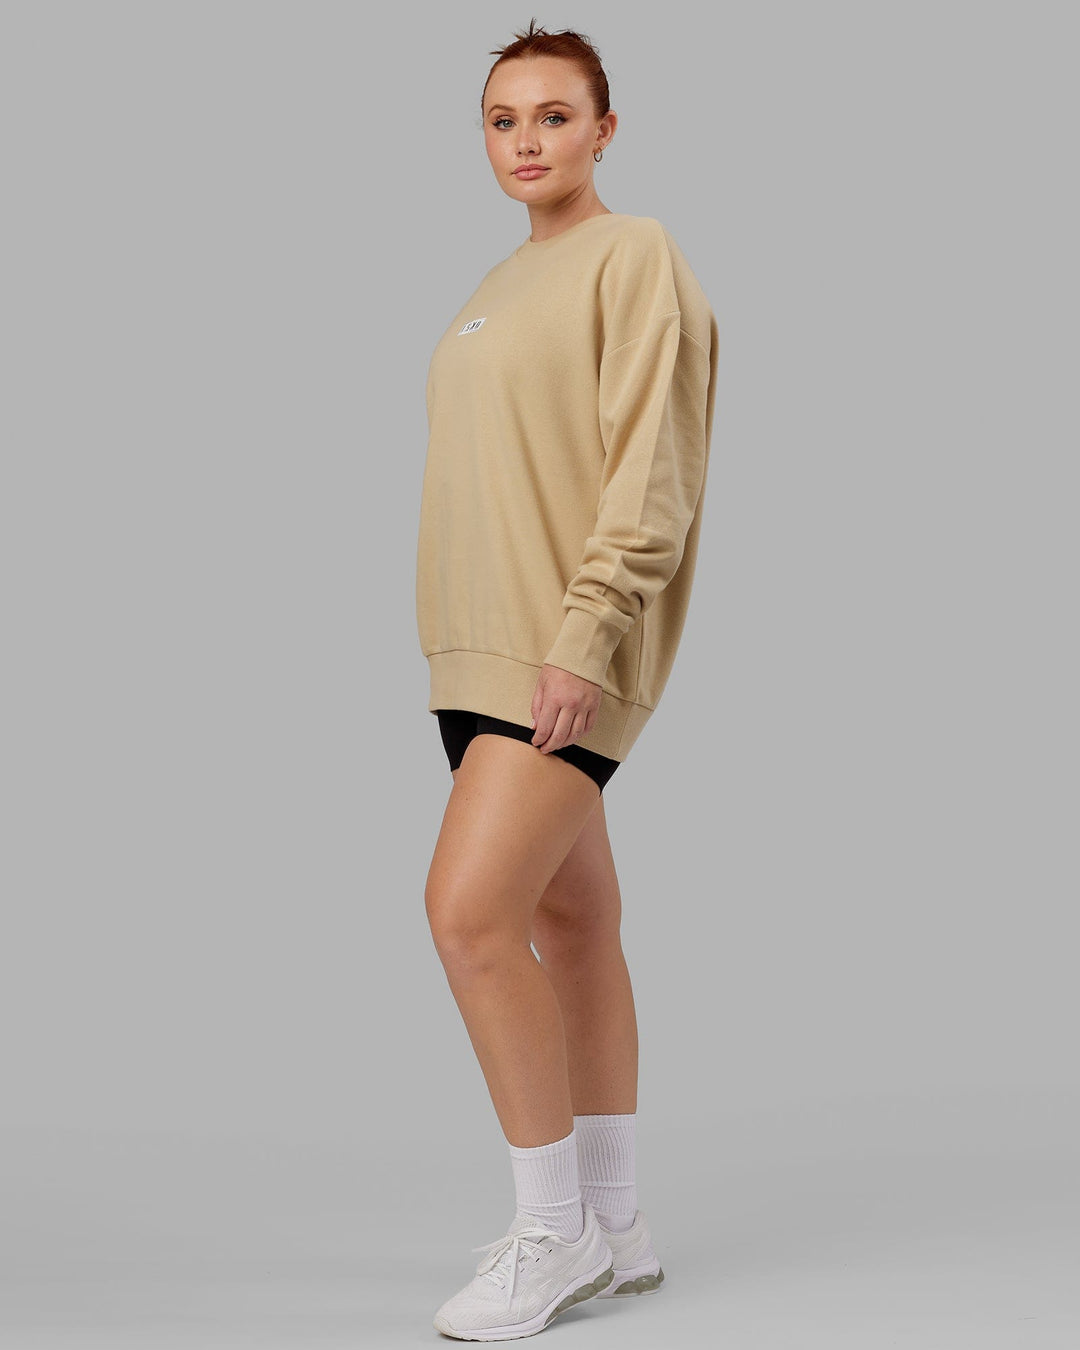 Woman wearing Unisex Cornerstone Sweater Oversize - Pale Khaki